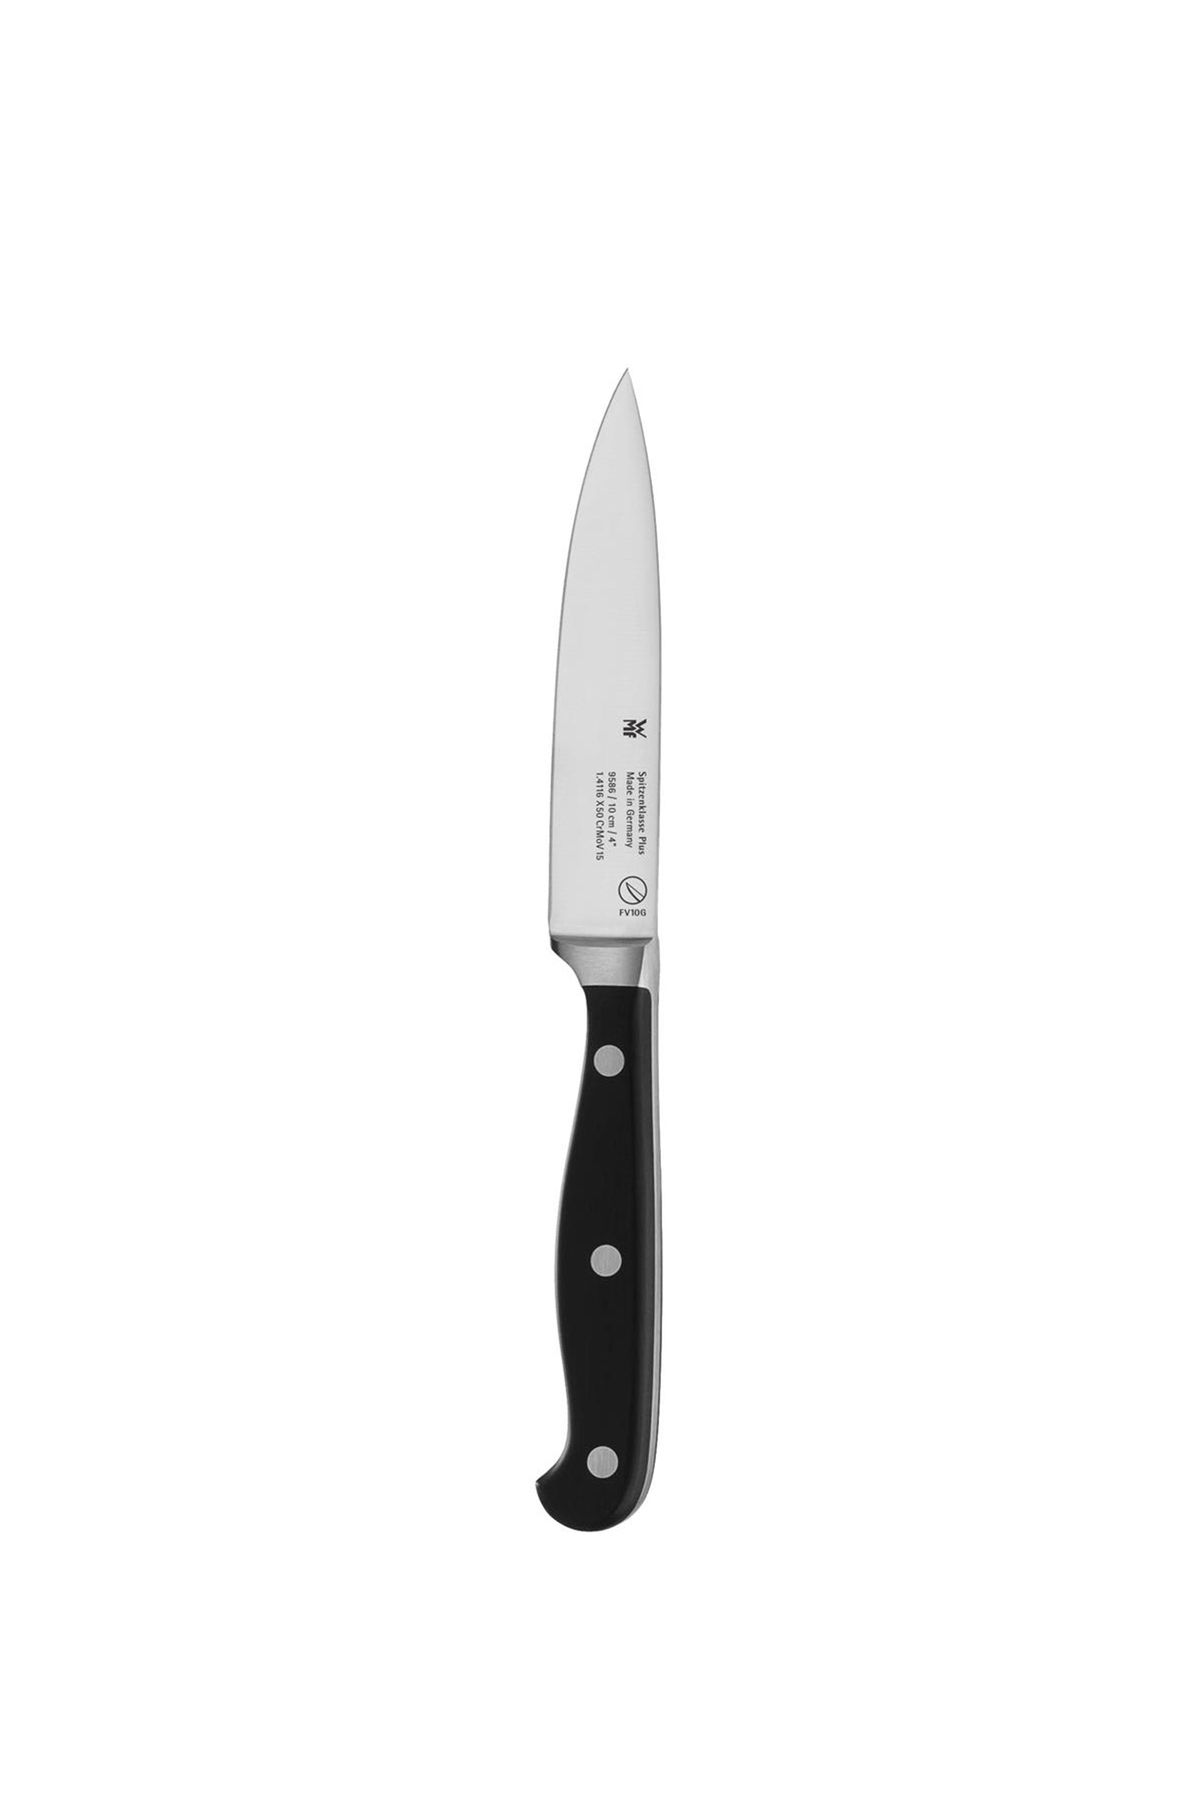 Wmf Spitzenklasse Çok Amaçlı Bıçak 10 cm Beden: 10